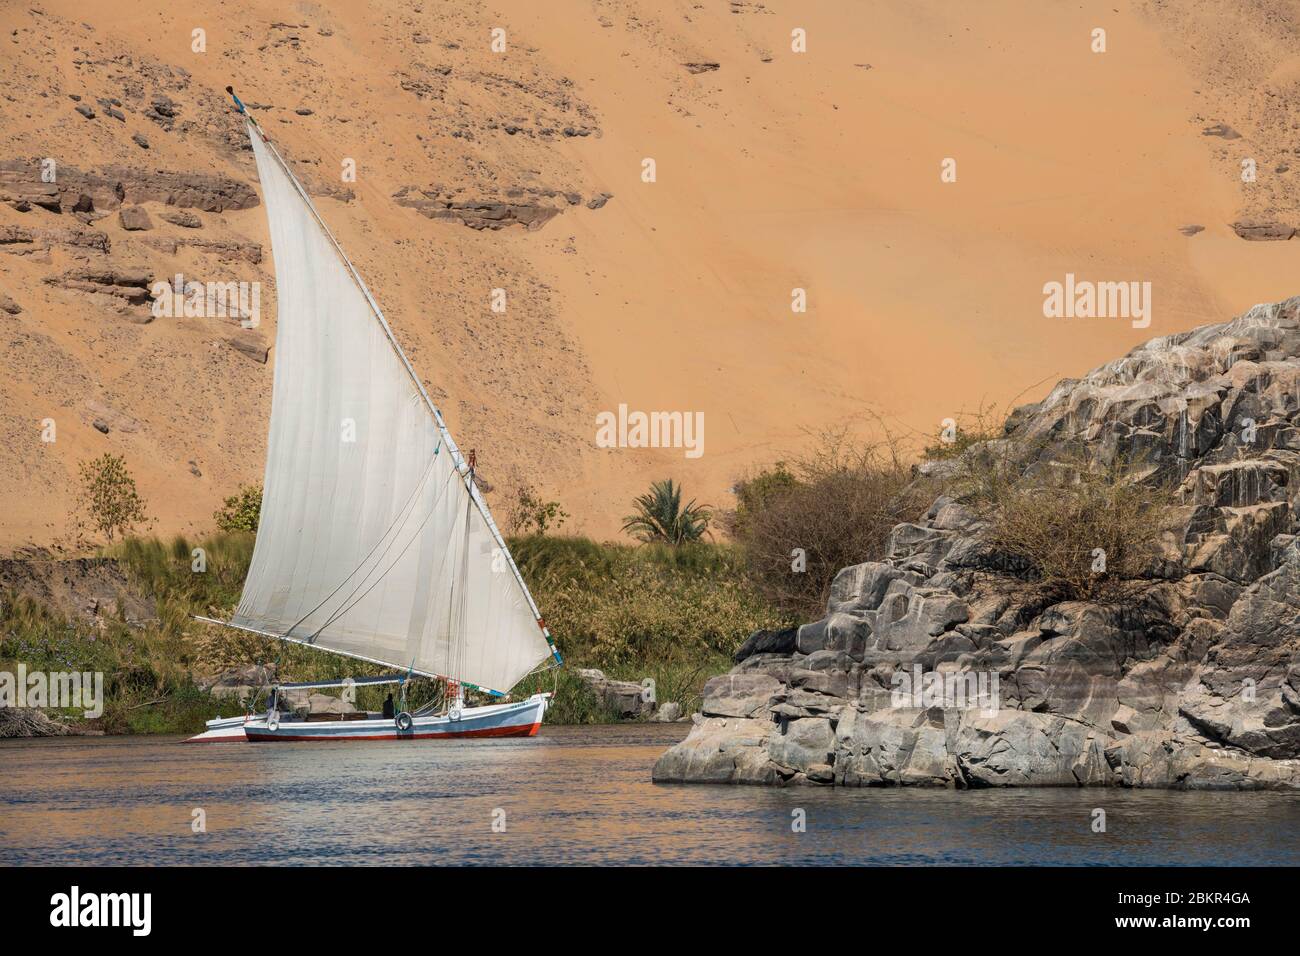 Egypt, Upper Egypt, near Elephanine island, sailor on a felucca sailing on the Nile Stock Photo